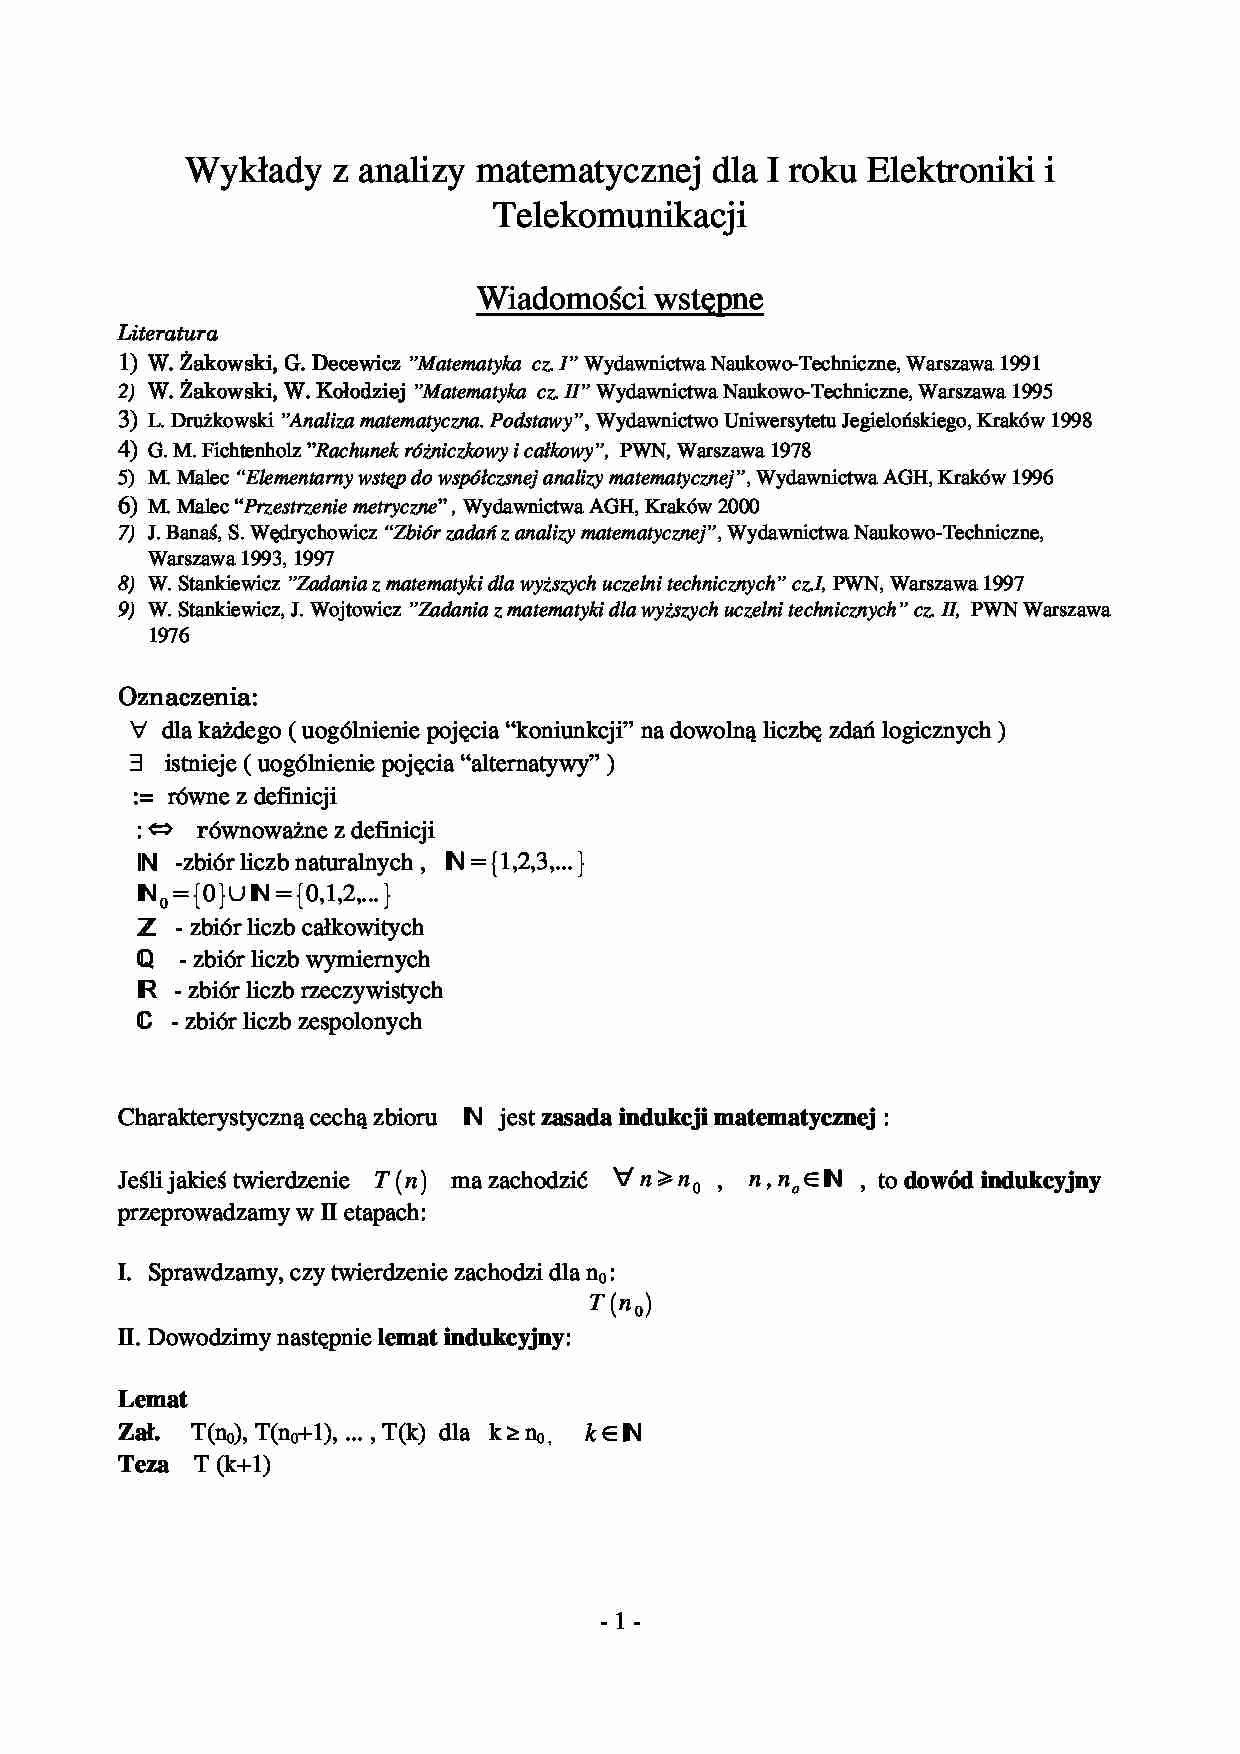 Wykłady z analizy matematycznej dla I roku Elektroniki i Telekomunikacji - strona 1